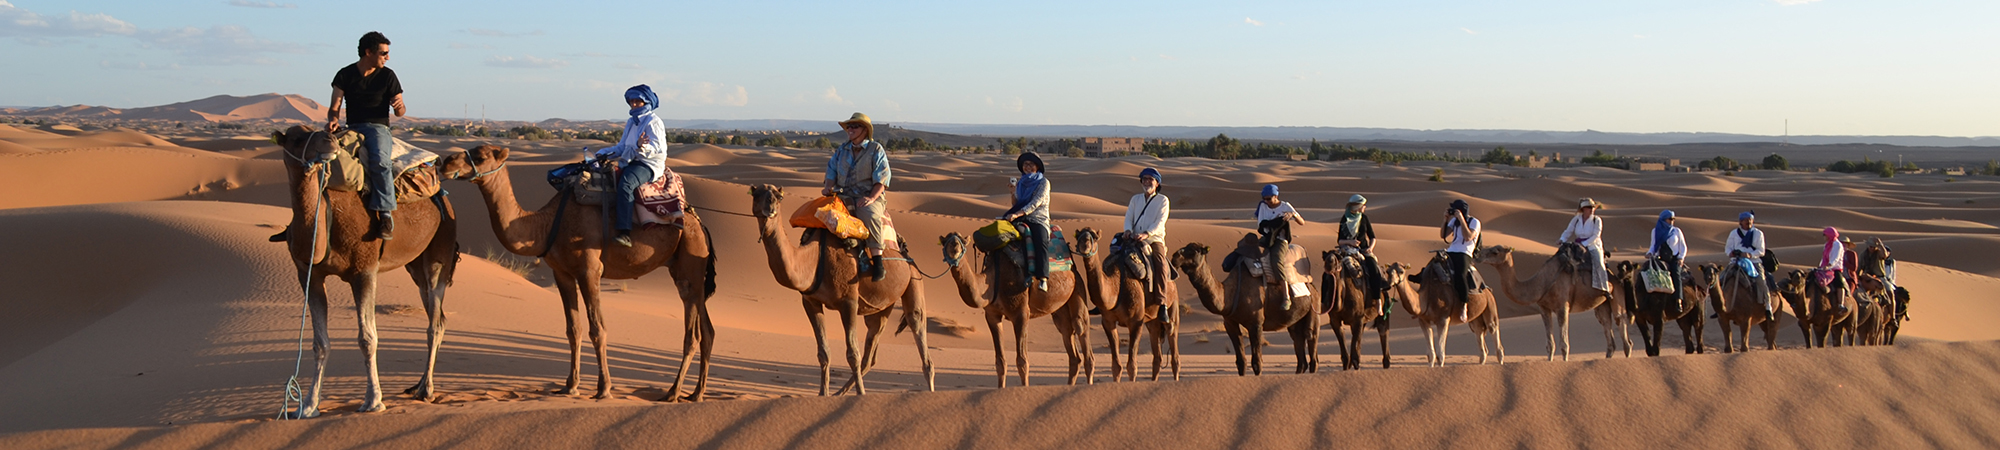 relaxing camel ride in the desert